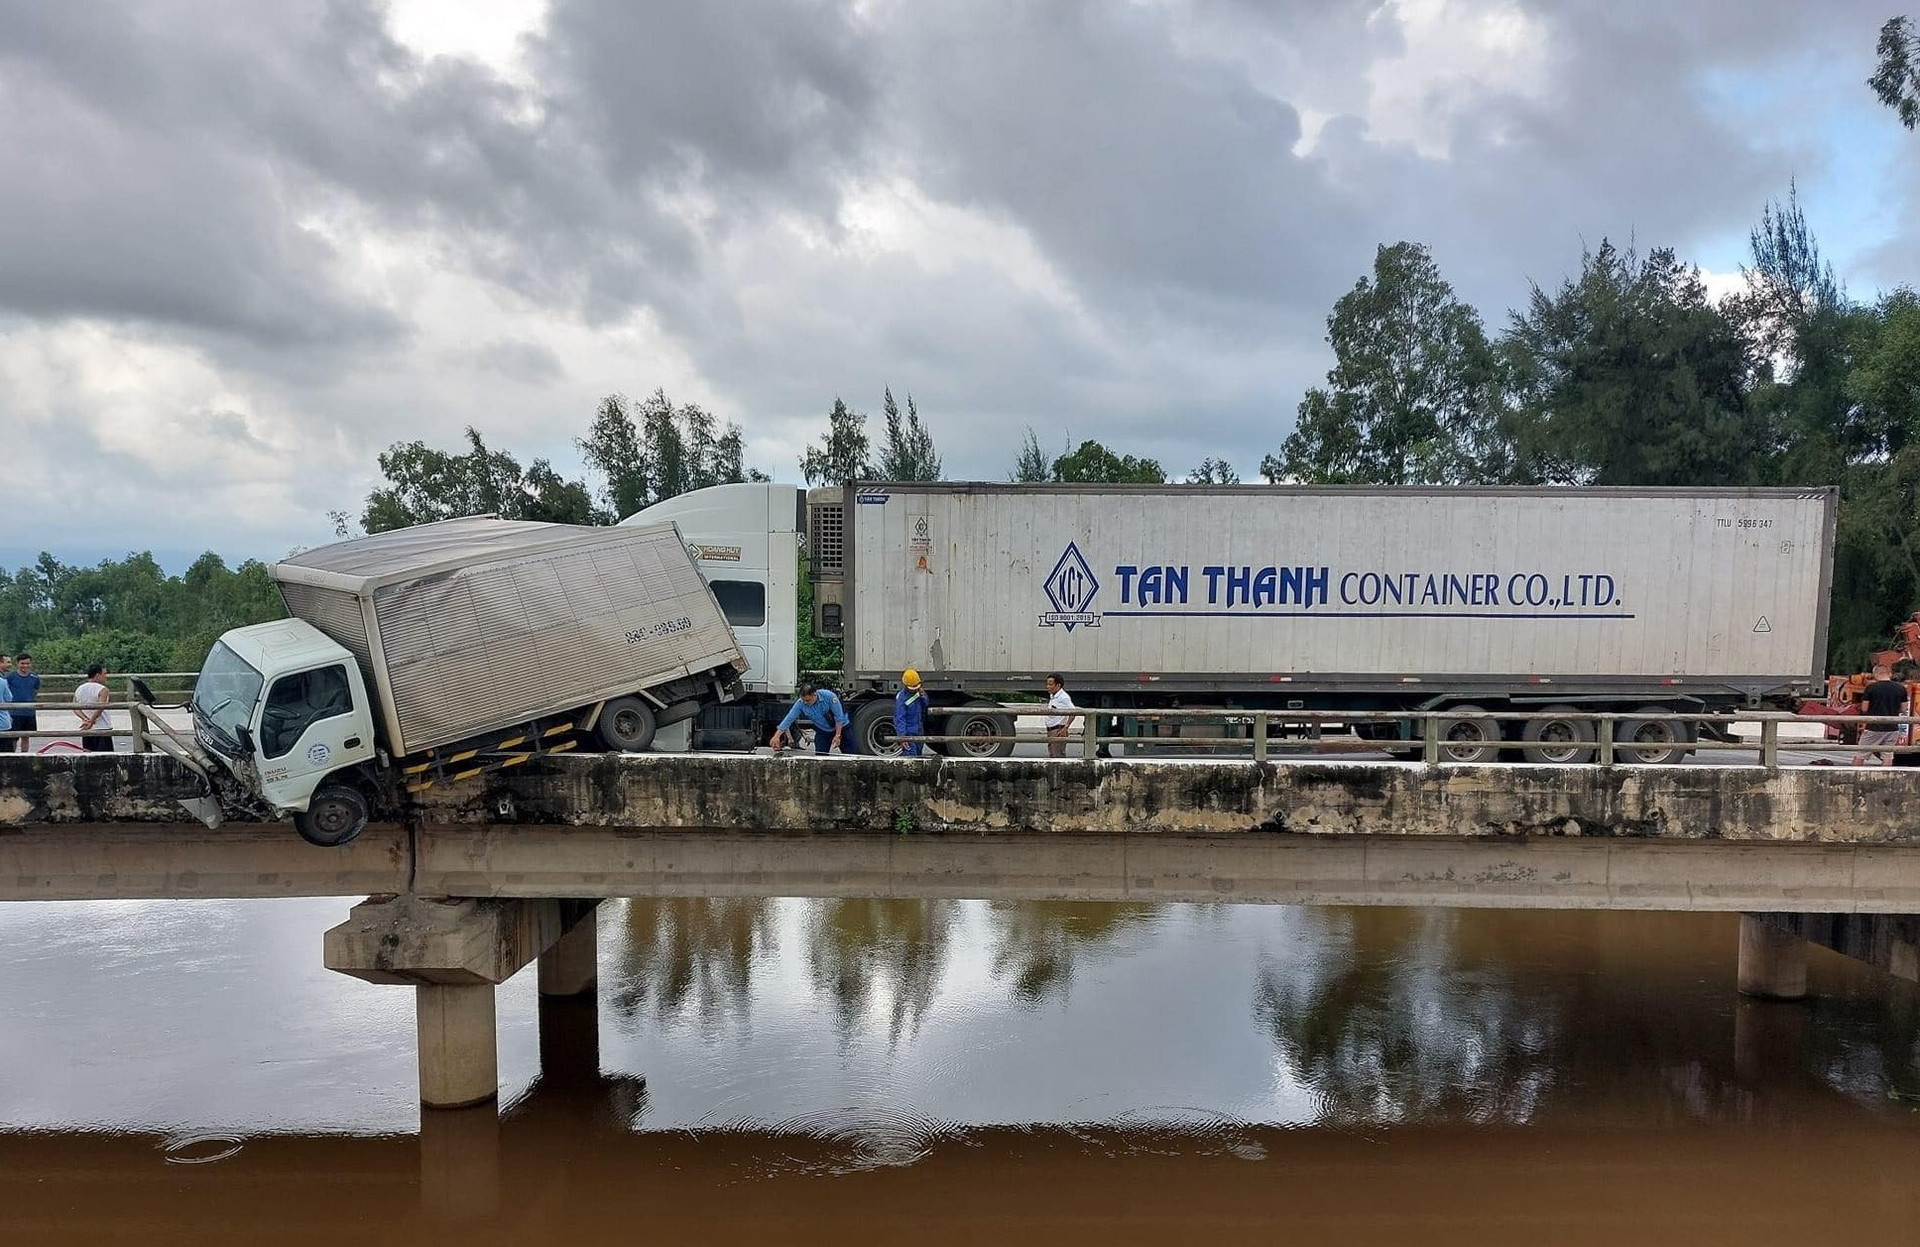 Xe tải vắt vẻo trên thành cầu sau tai nạn liên hoàn - 1